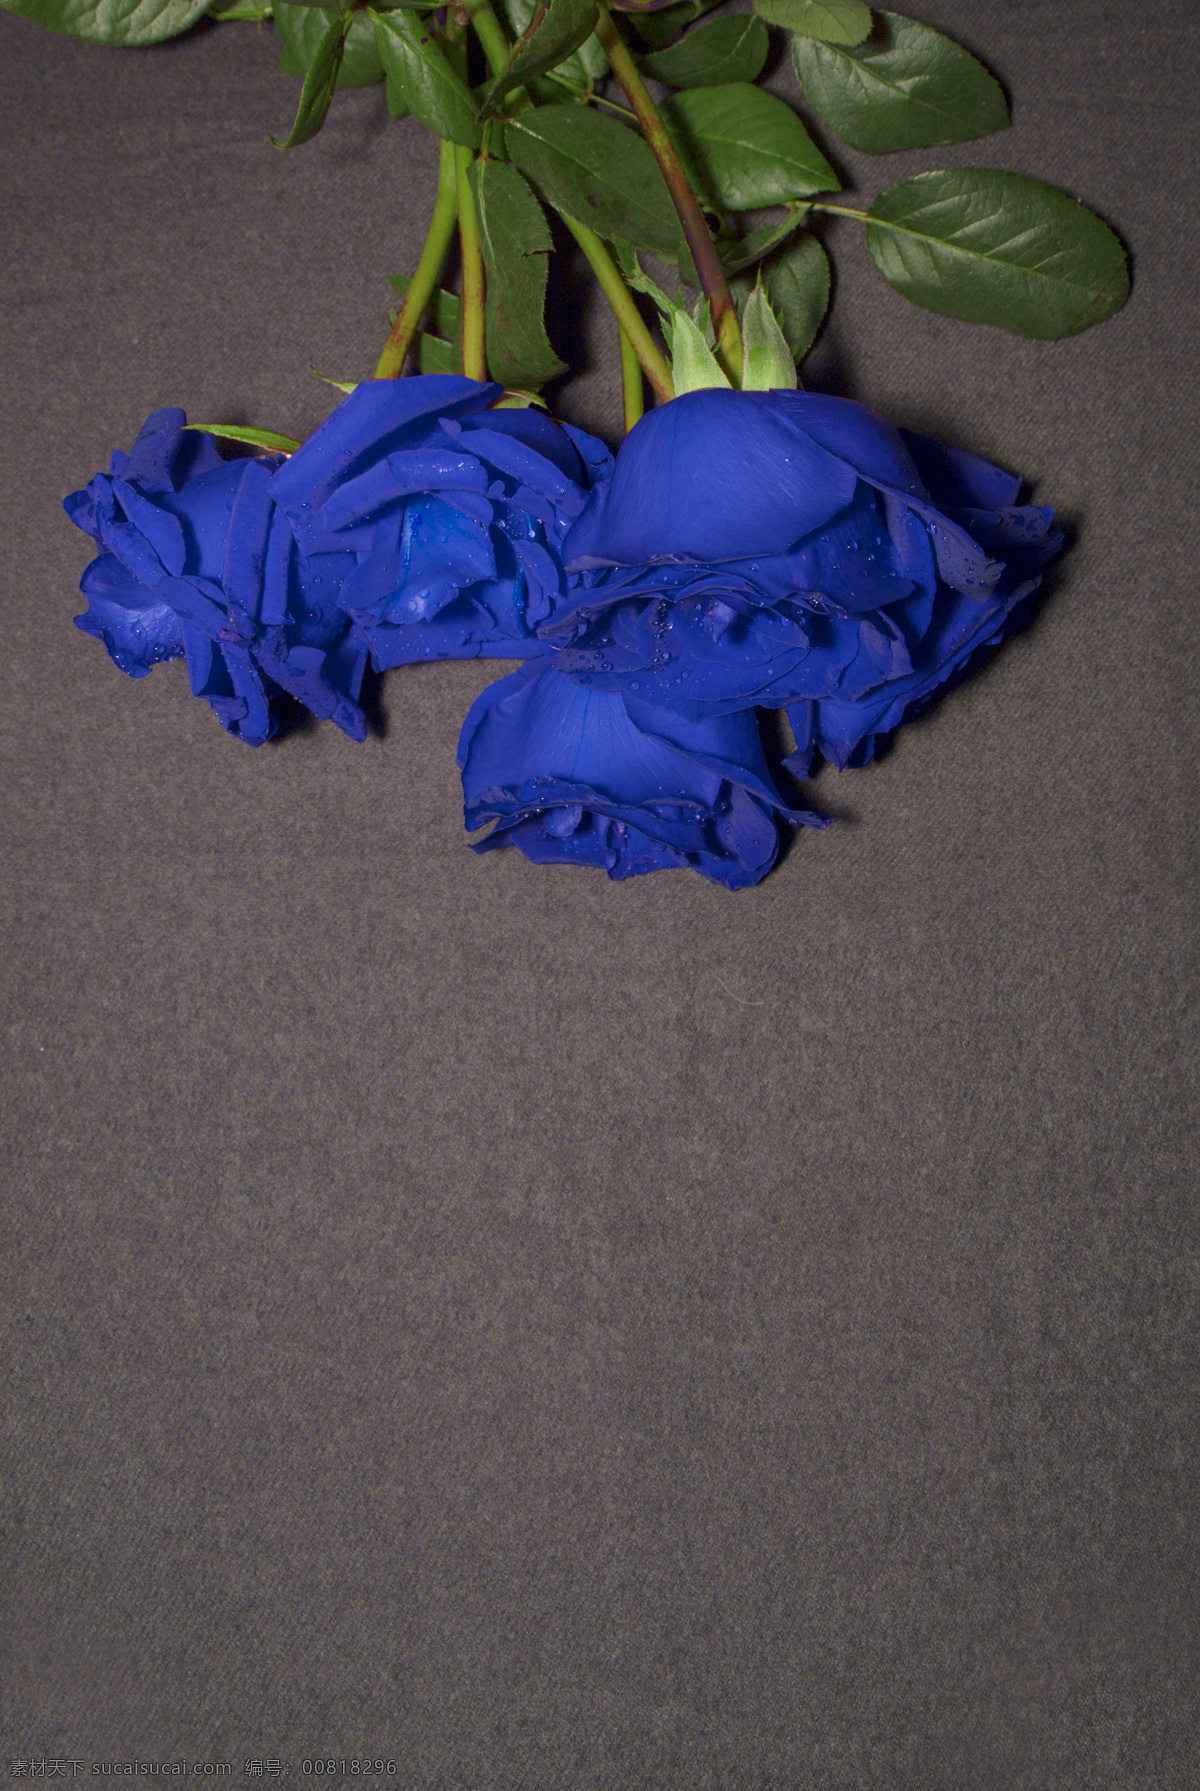 蓝色 妖姬 玫瑰花 图 蓝色妖姬 蓝玫瑰 摄影图 照片 背景 文艺 唯美 花 鲜花